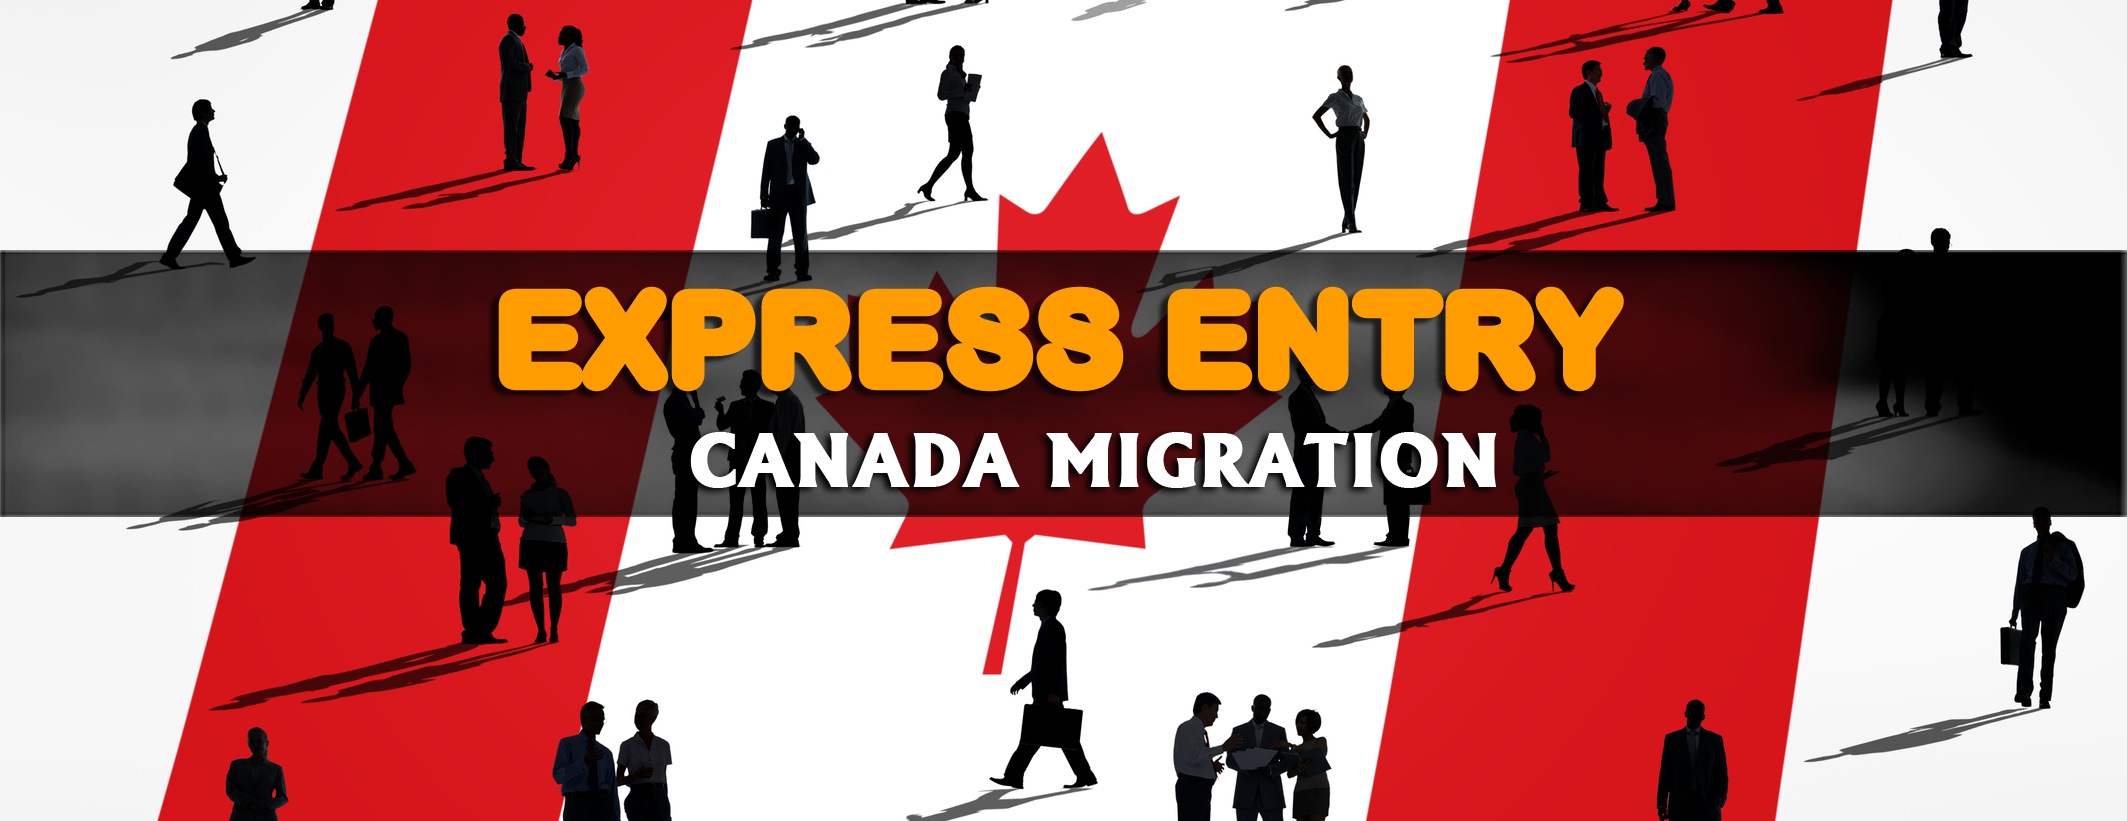 Ứng Viên Express Entry Canada Có Nên Mở Hồ Sơ Lúc Này Không?